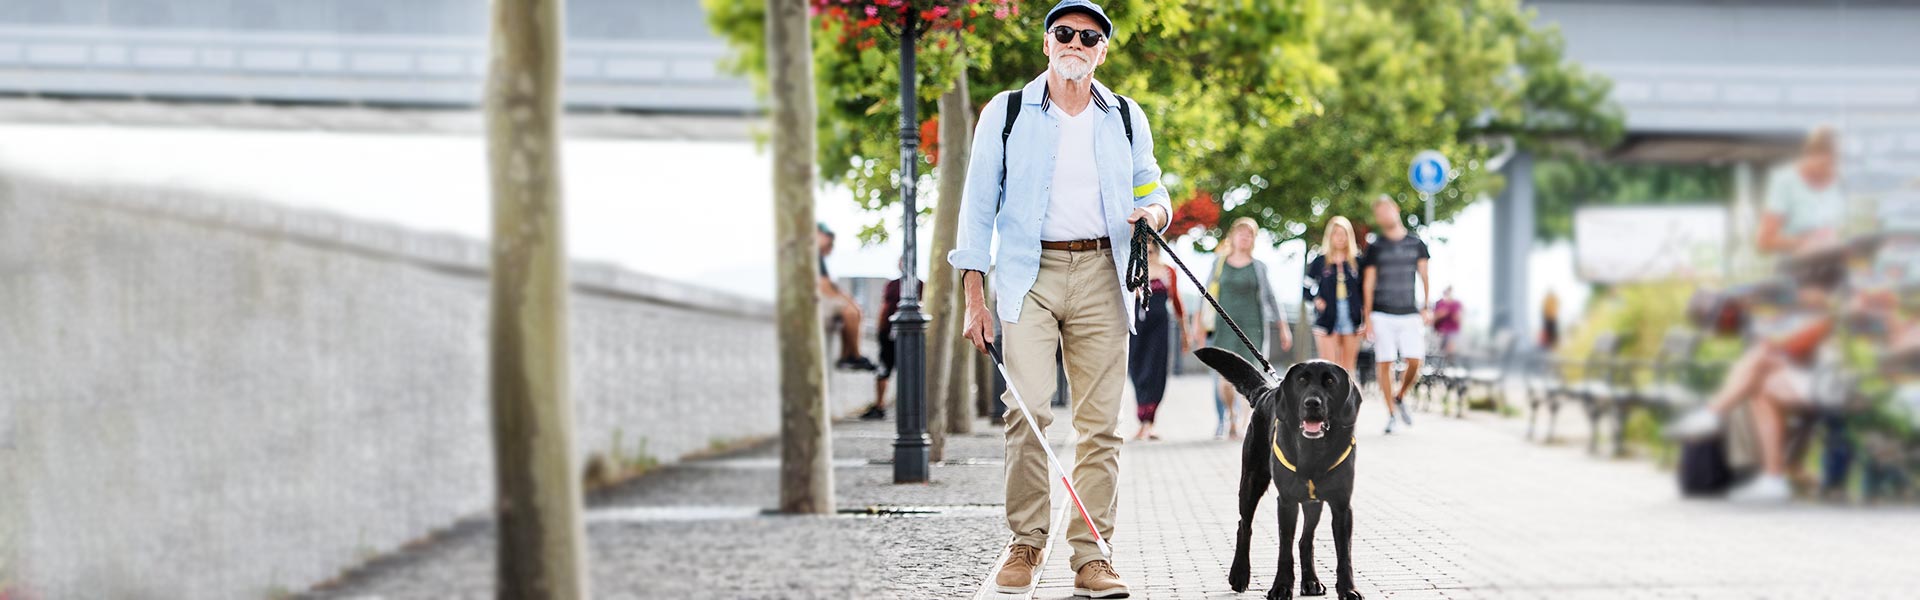 Lörrach & die Regio - lebenswertes Lörrach - Blinder mit Blindenhund